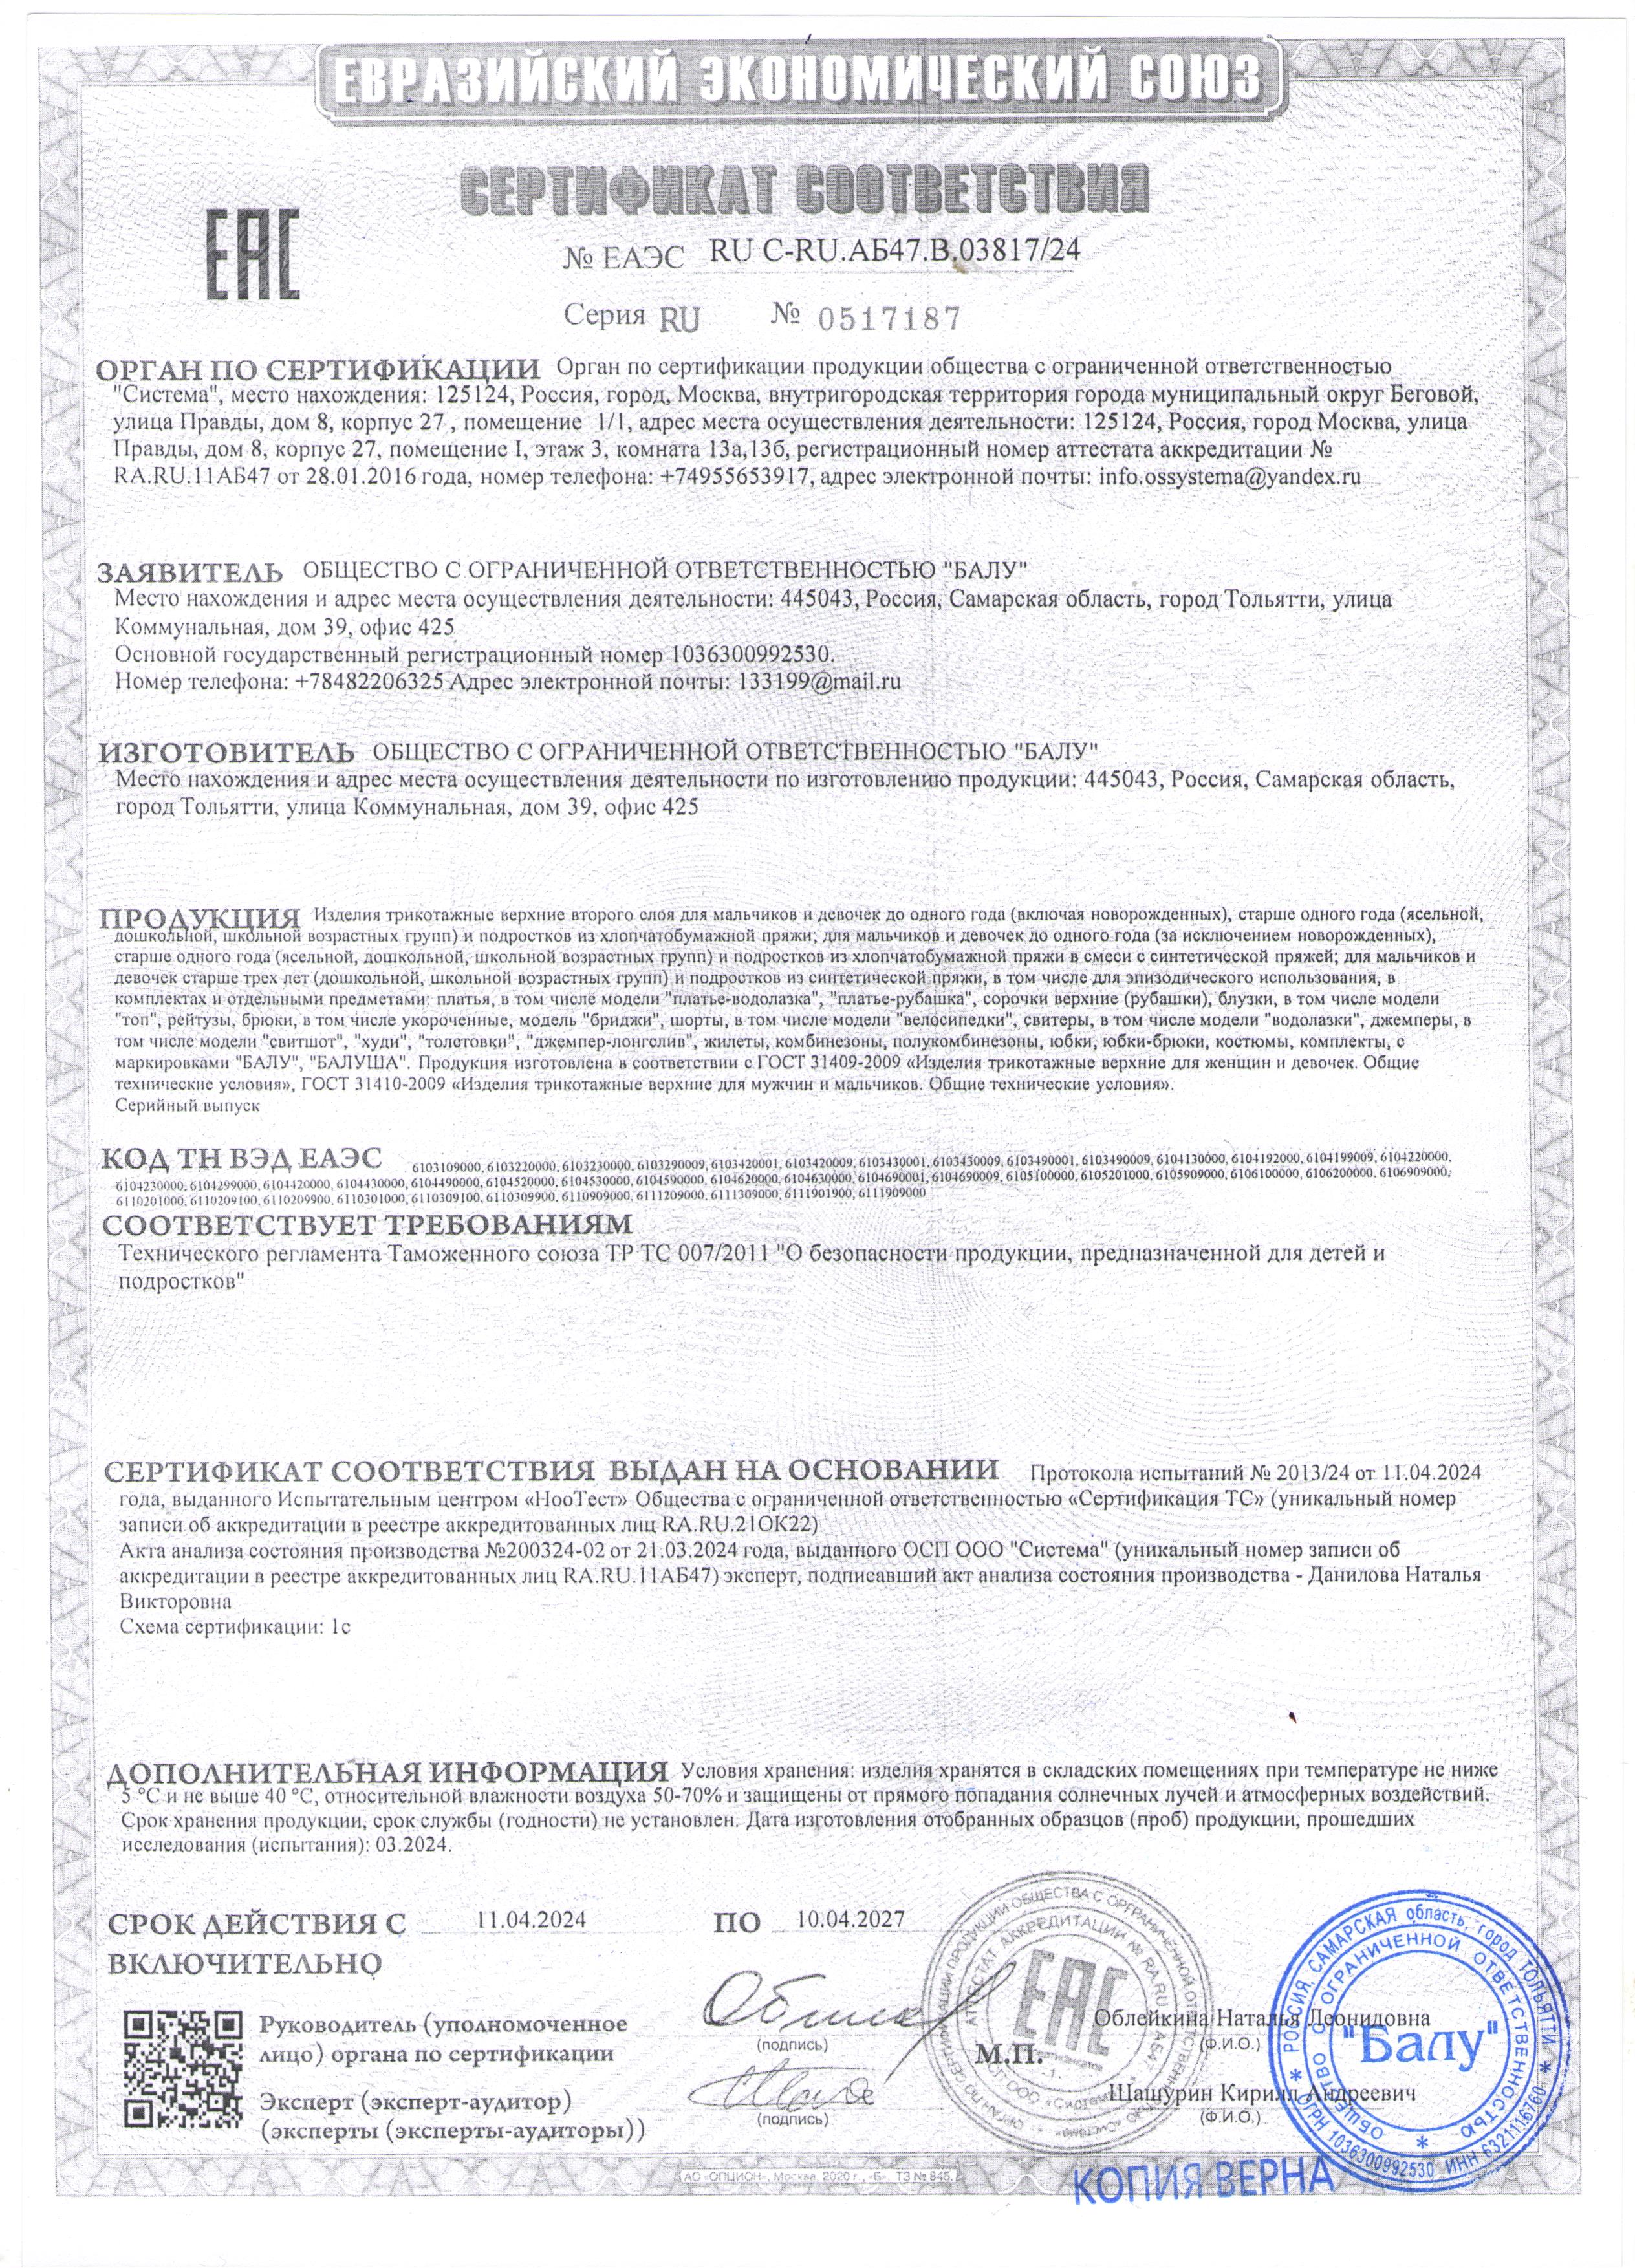 Сертификат соответствия: Изделия верхние 2 слоя до 10.04.2027